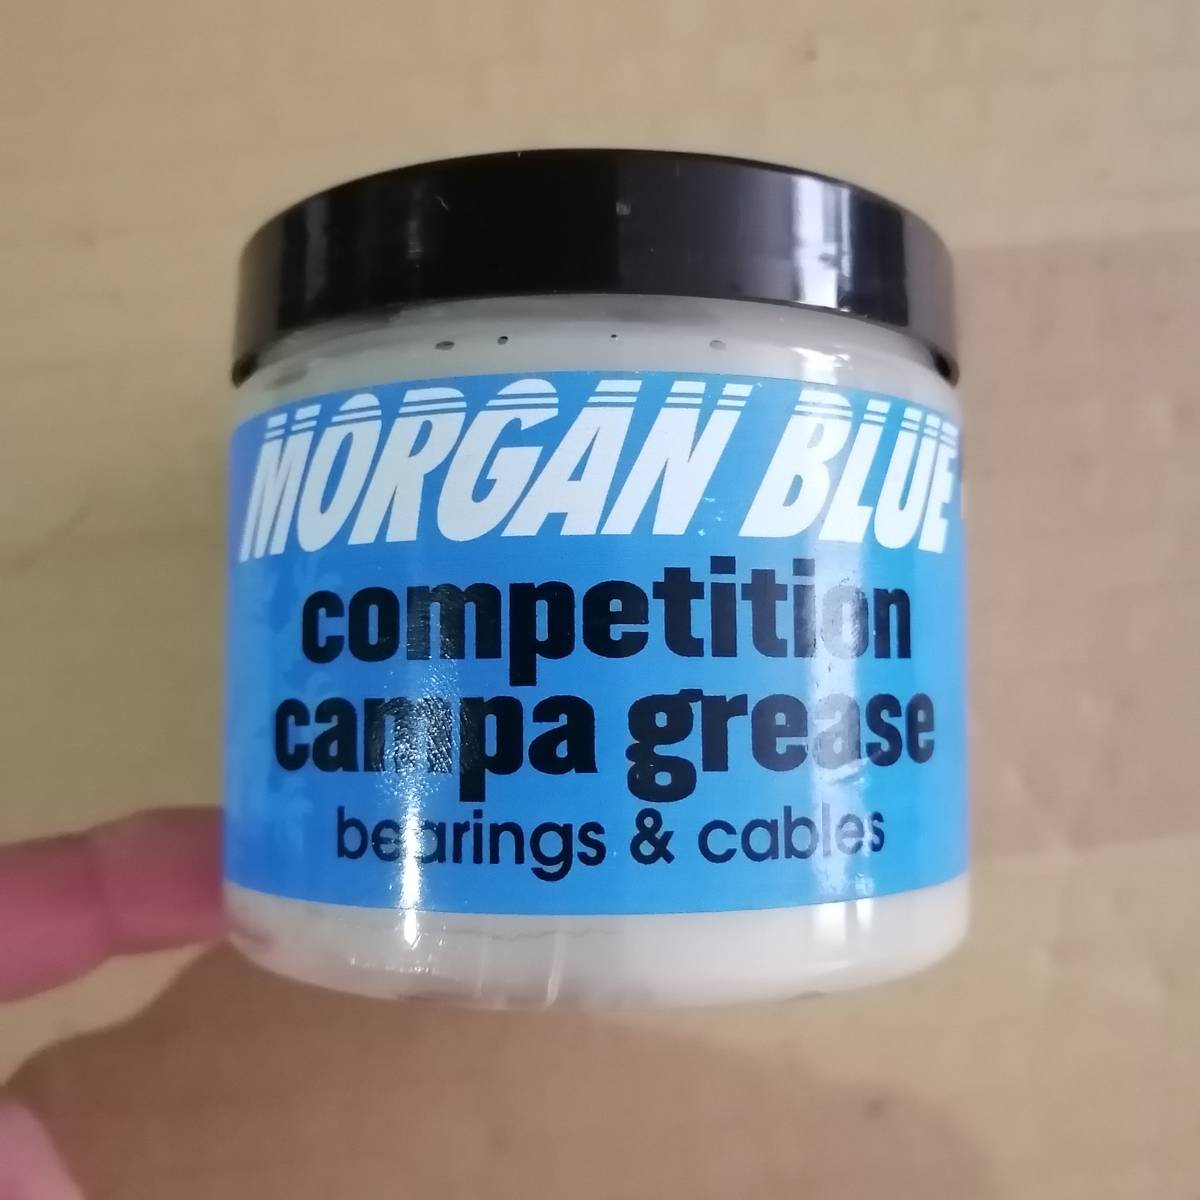  Morgan голубой campag смазка пробный небольшое количество .10g Campagnolo Dura Ace SRAM Pro команда использование Belgium 